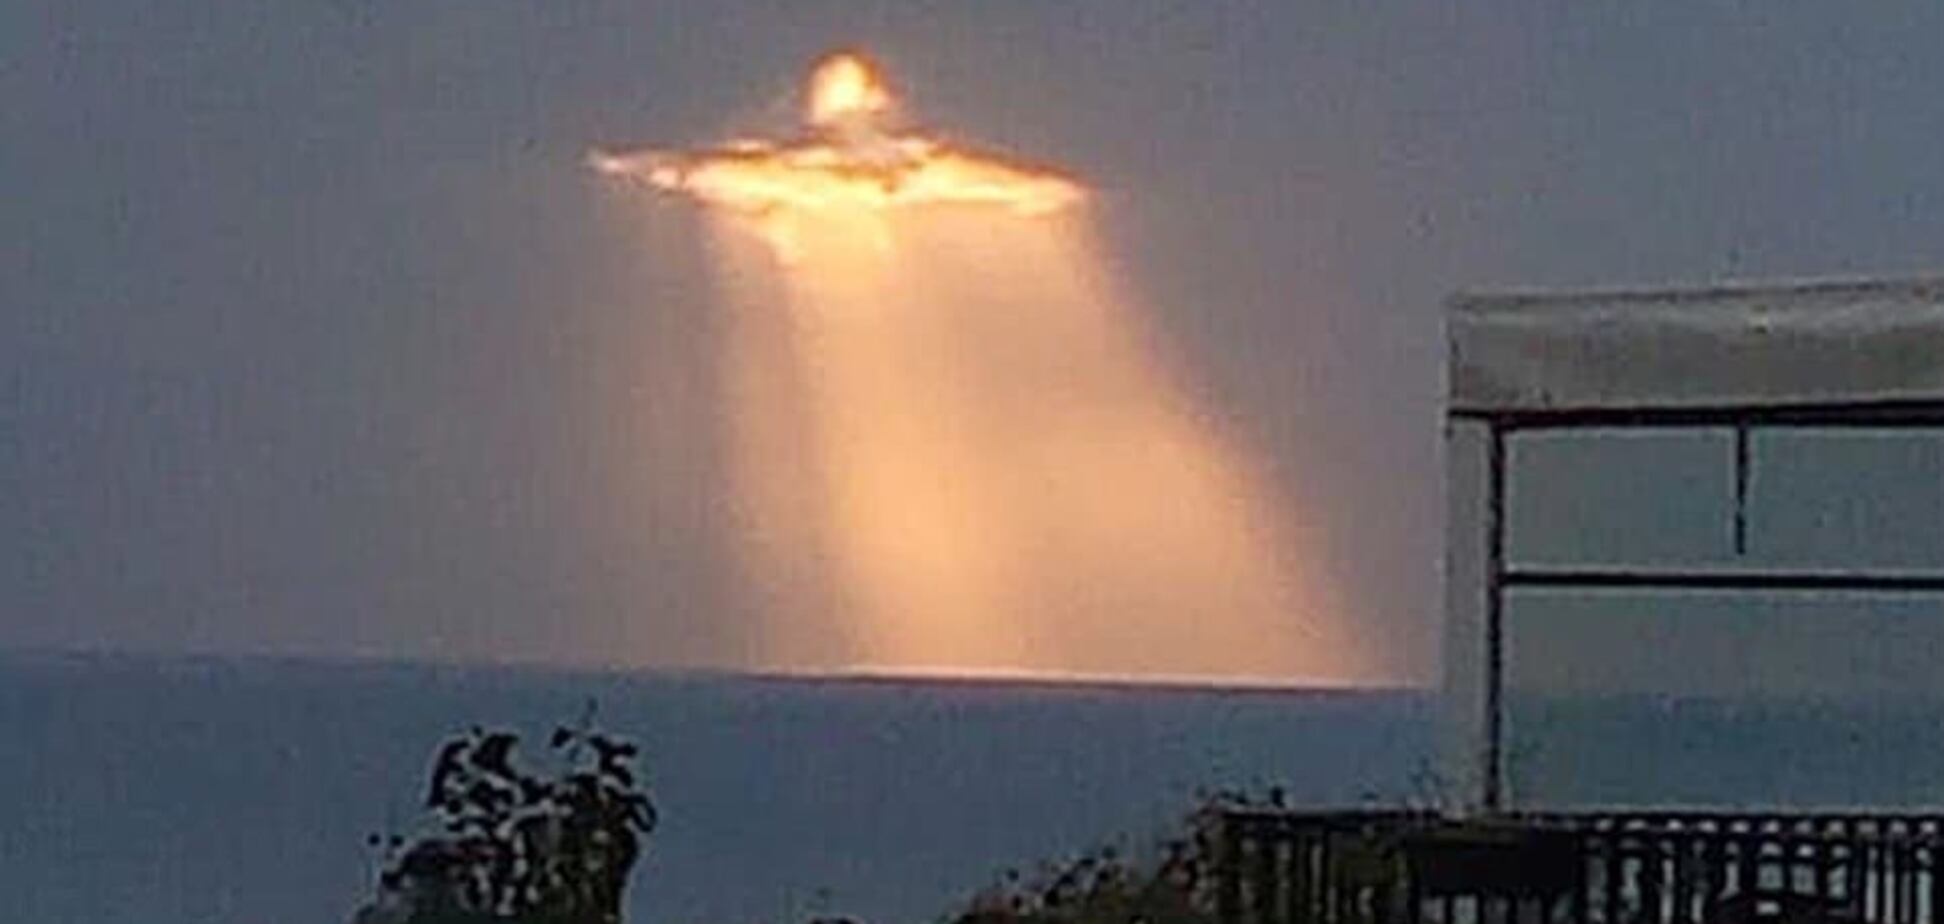 Нове пришестя? В Італії з неба з'явився образ Ісуса Христа. Фото